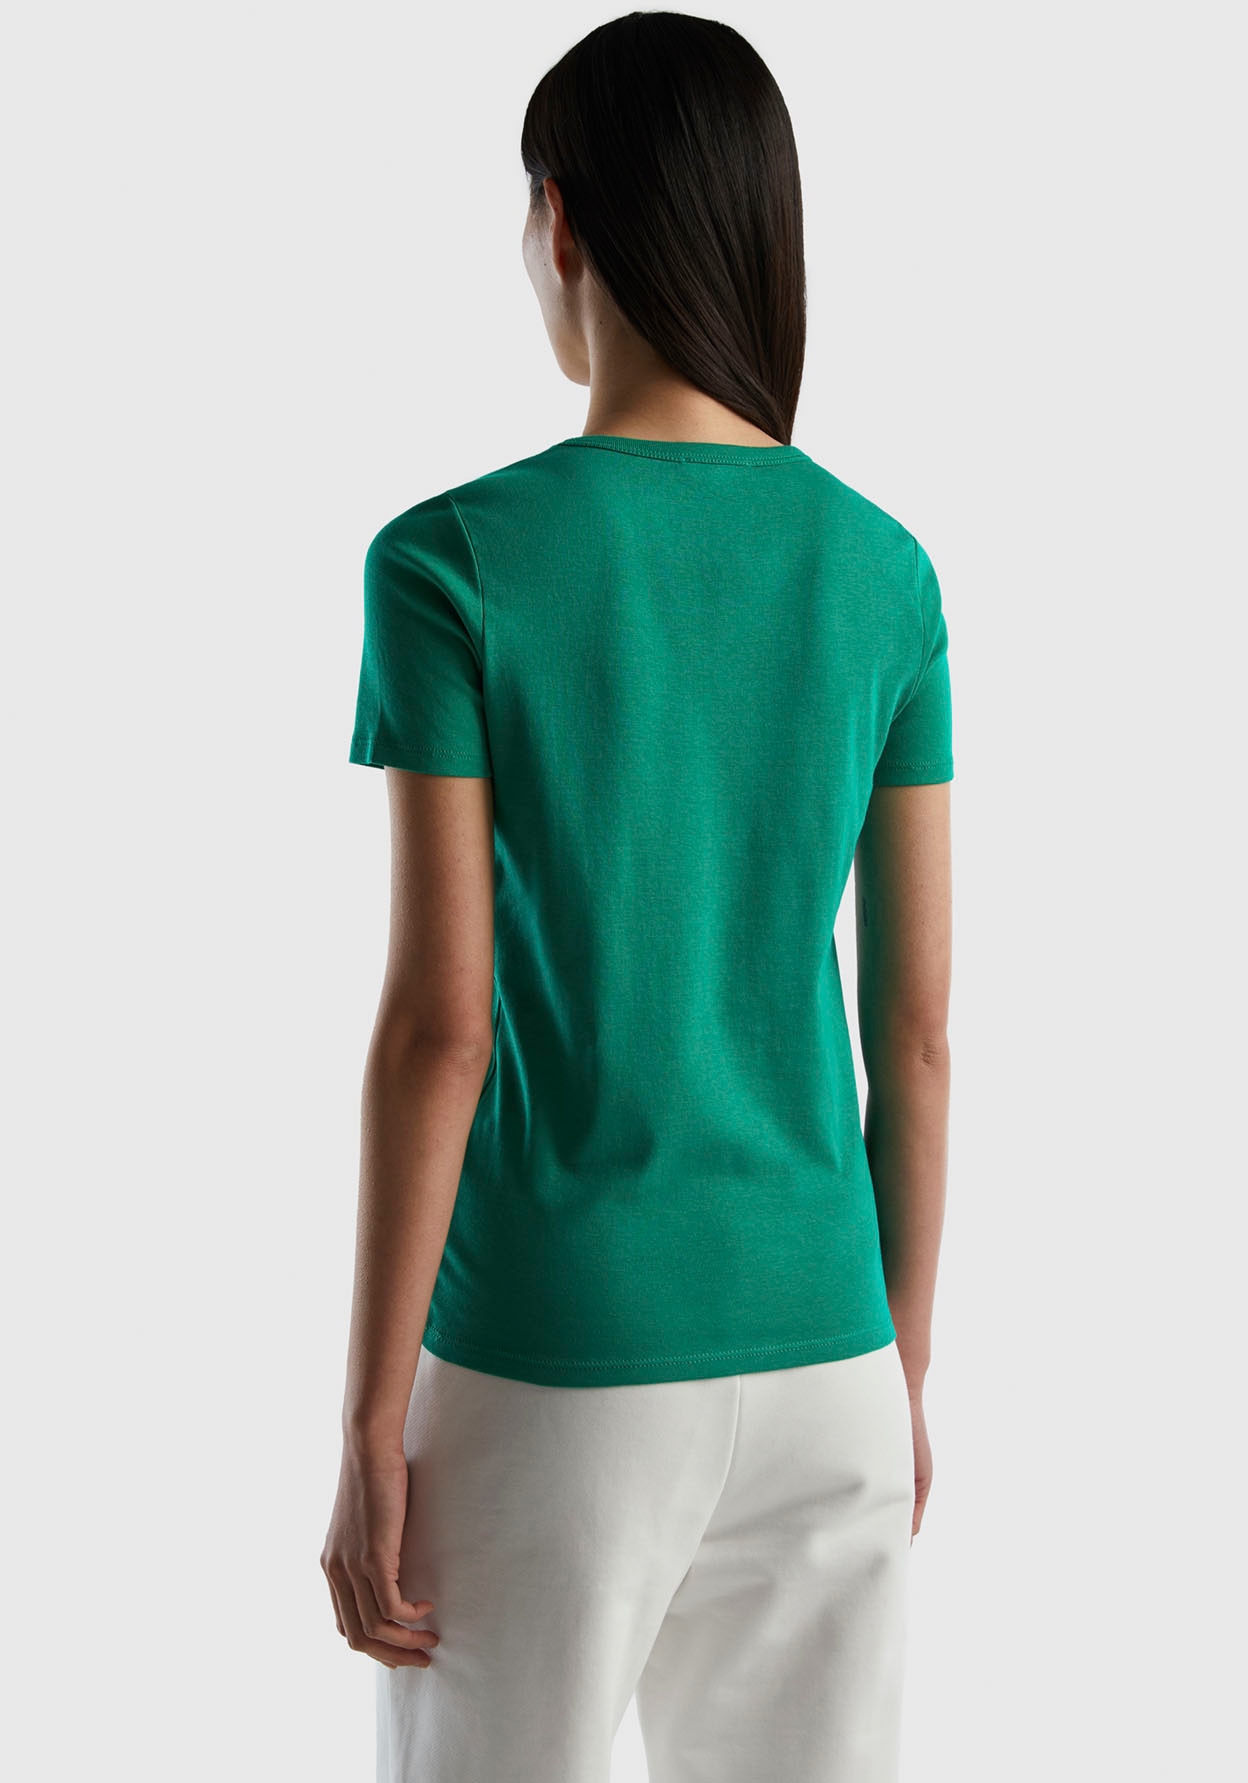 ♕ United Colors of Benetton T-Shirt, (1 tlg.), mit glitzerndem Druck  versandkostenfrei bestellen